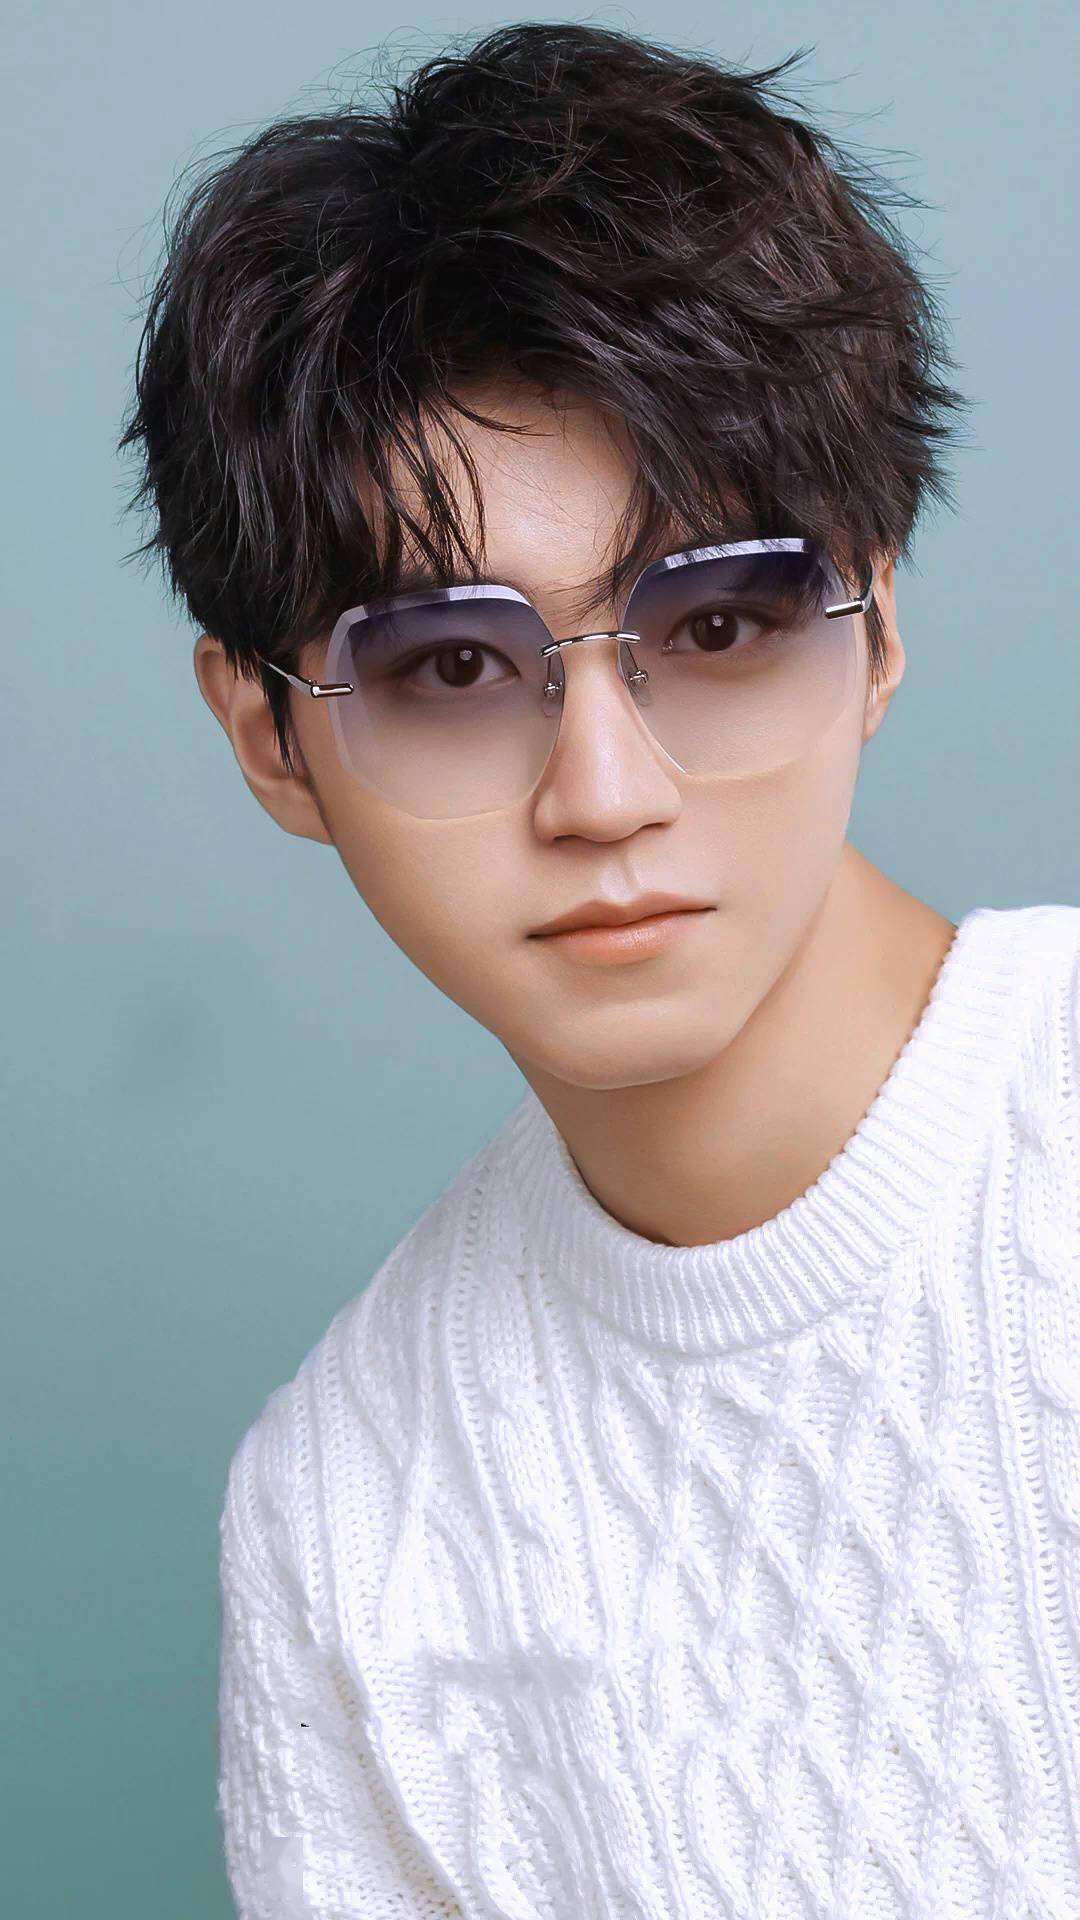 王俊凯眼镜帅哥图鉴 散发不可言说的魅力